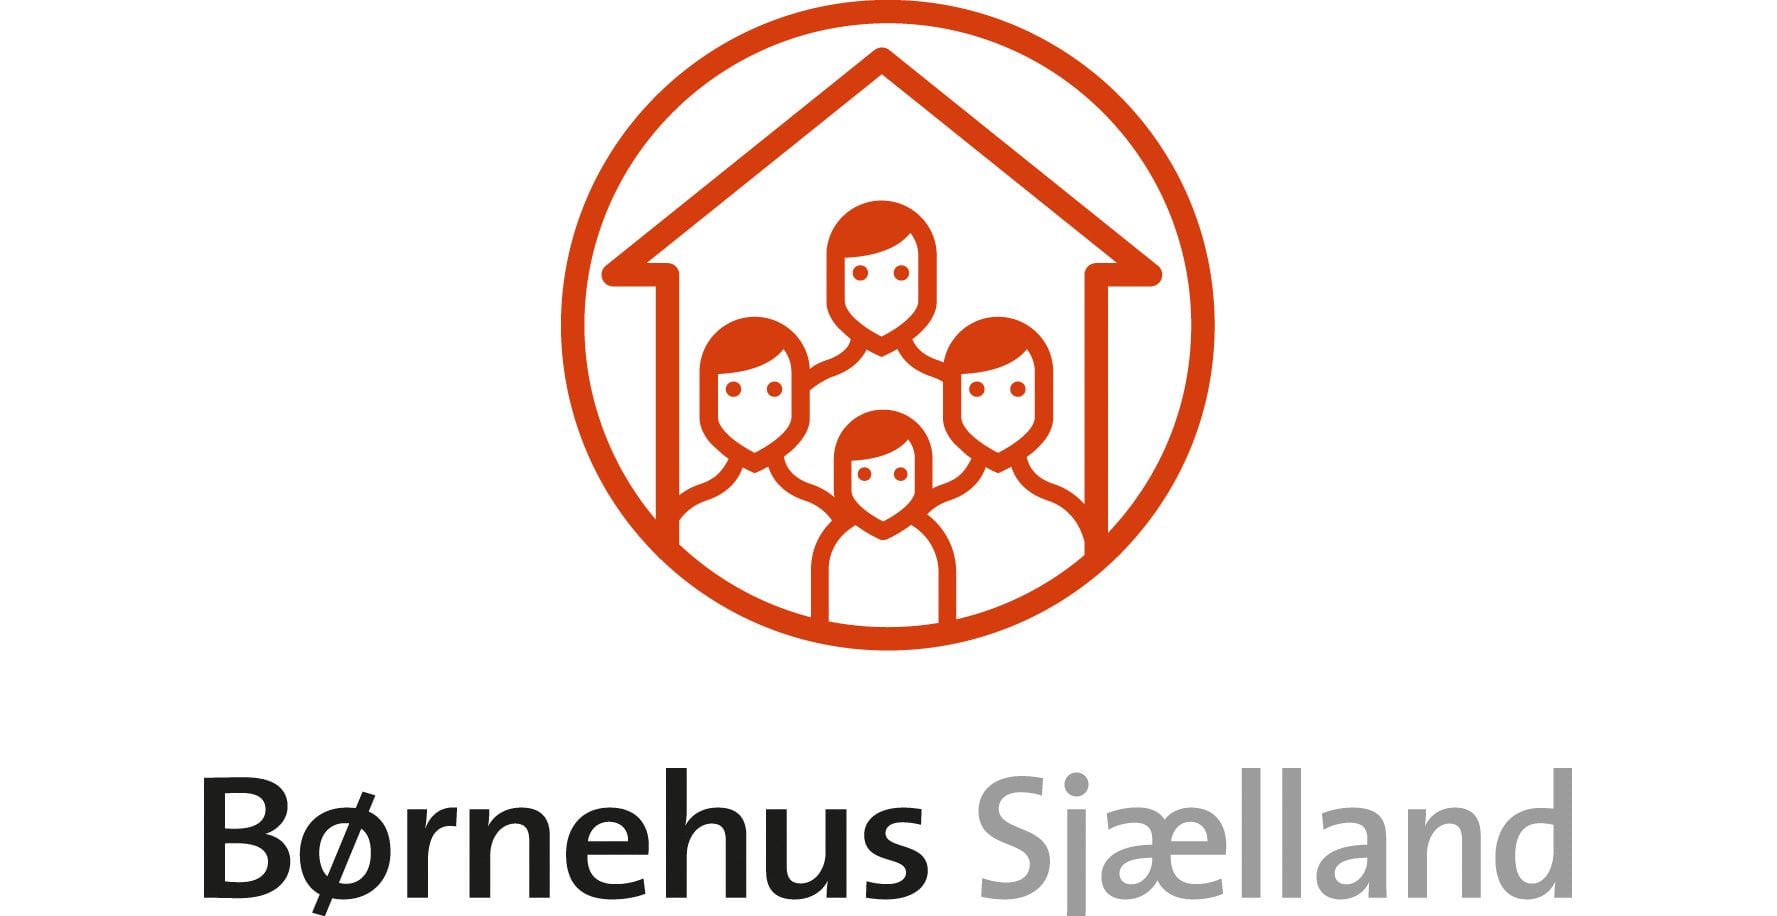 Børnehus Sjælland logo